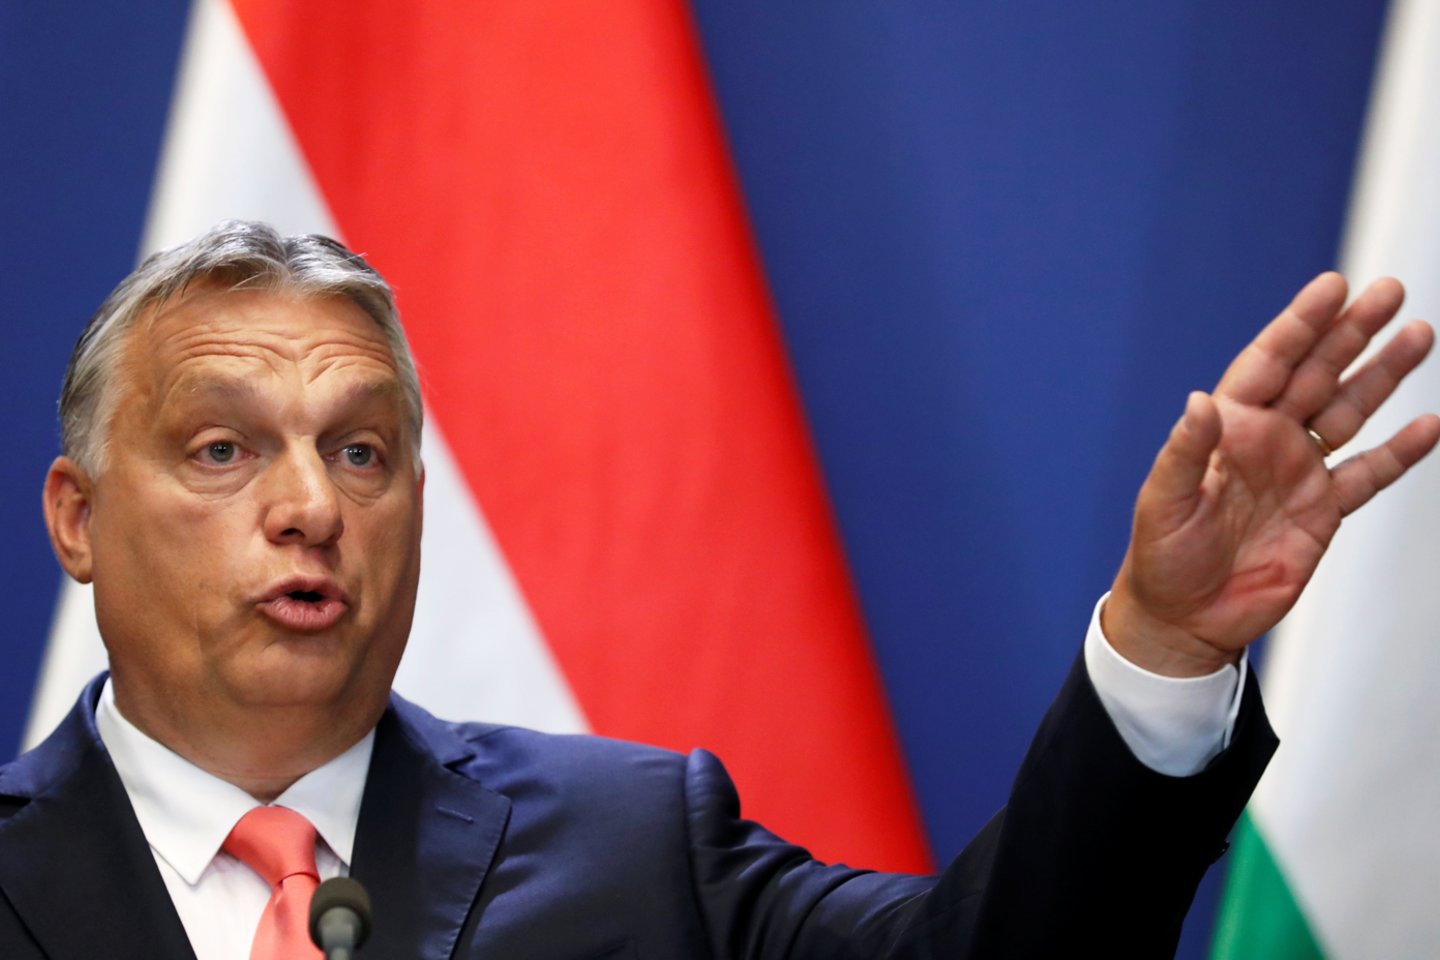 ​Europos Sąjungos aukščiausios instancijos teismas ketvirtadienį nusprendė, kad vienu Vengrijos premjero Viktoro Orbano draudimu iš užsienio finansuojamoms nevyriausybinėms organizacijoms buvo pažeisti Europos įstatymai.<br>Reuters/Scanpix nuotr.